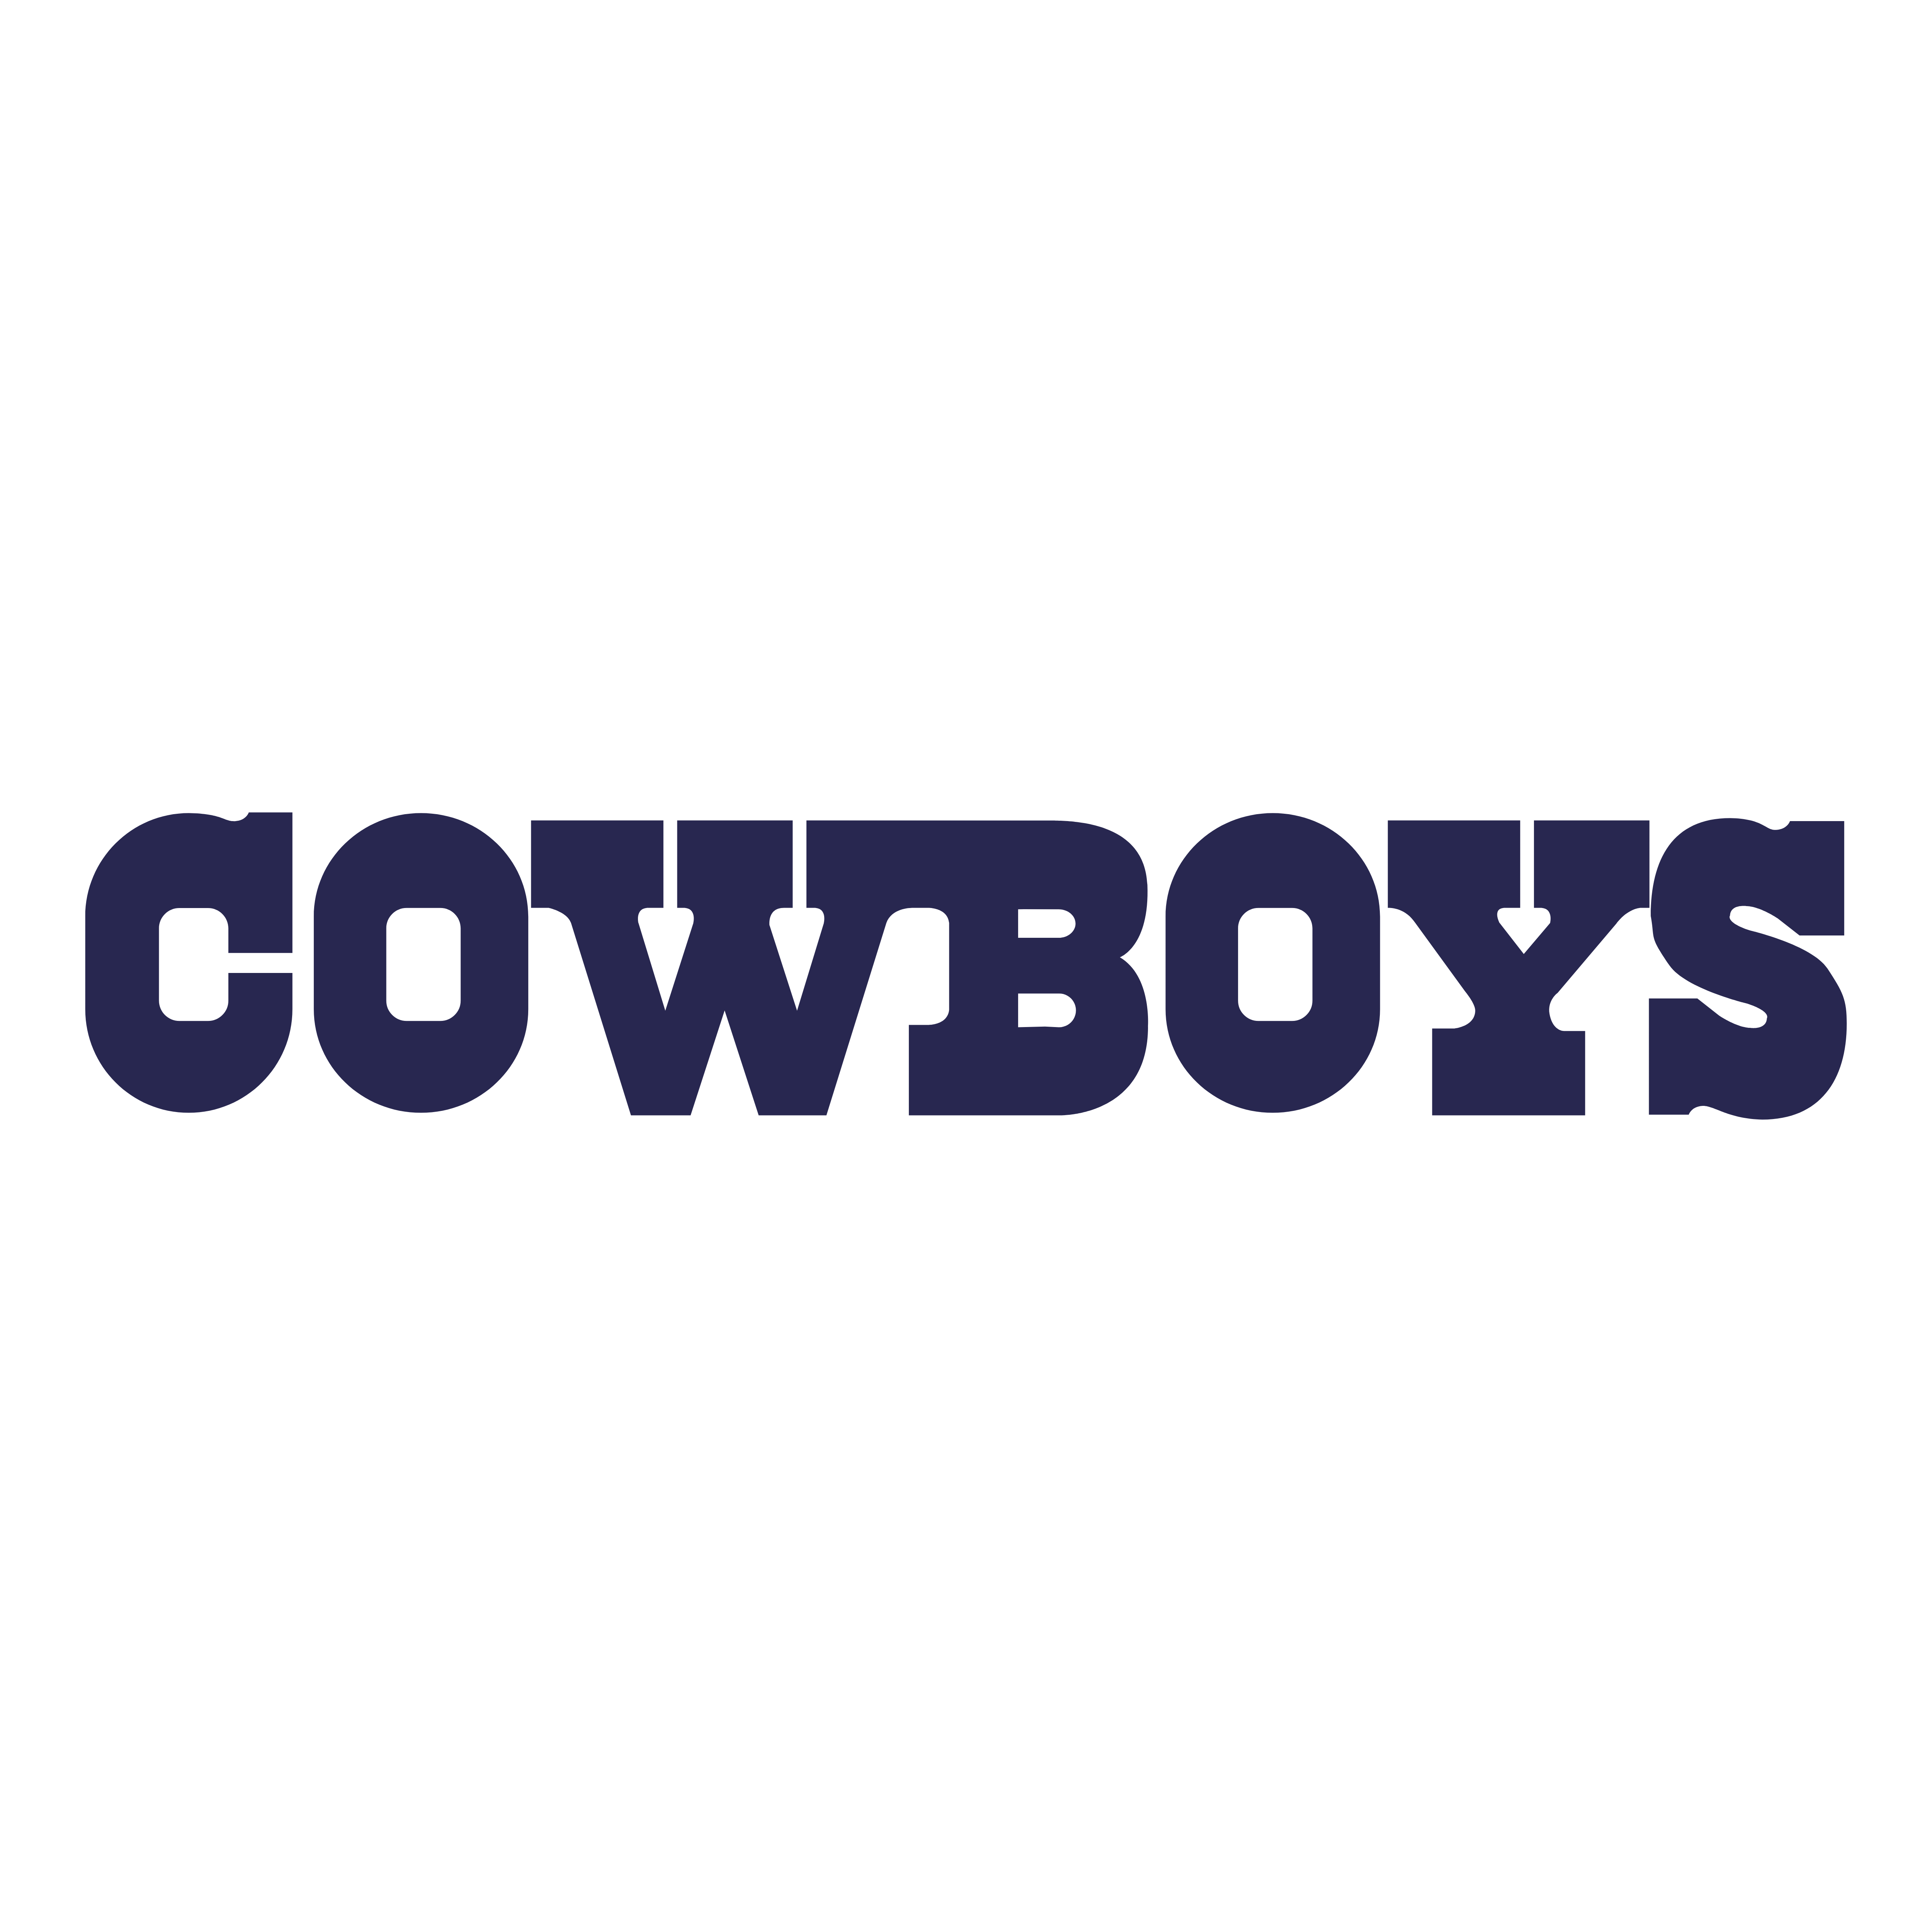 Dallas Cowboys.